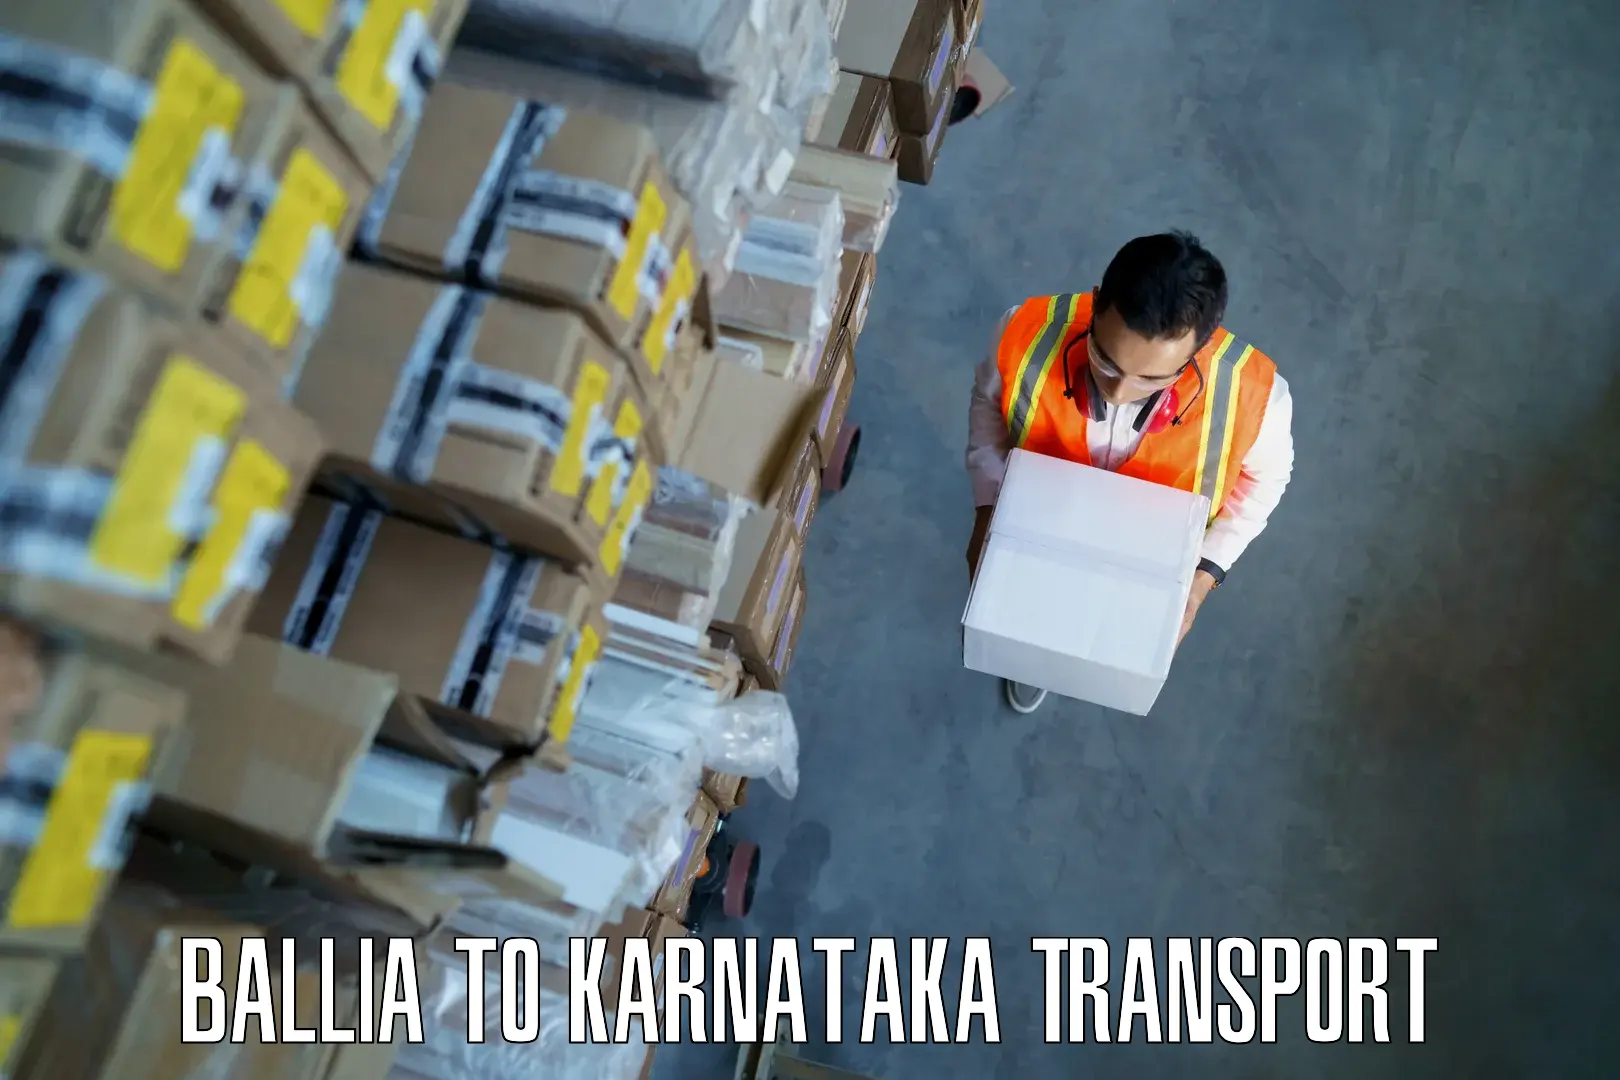 Furniture transport service in Ballia to Karnataka